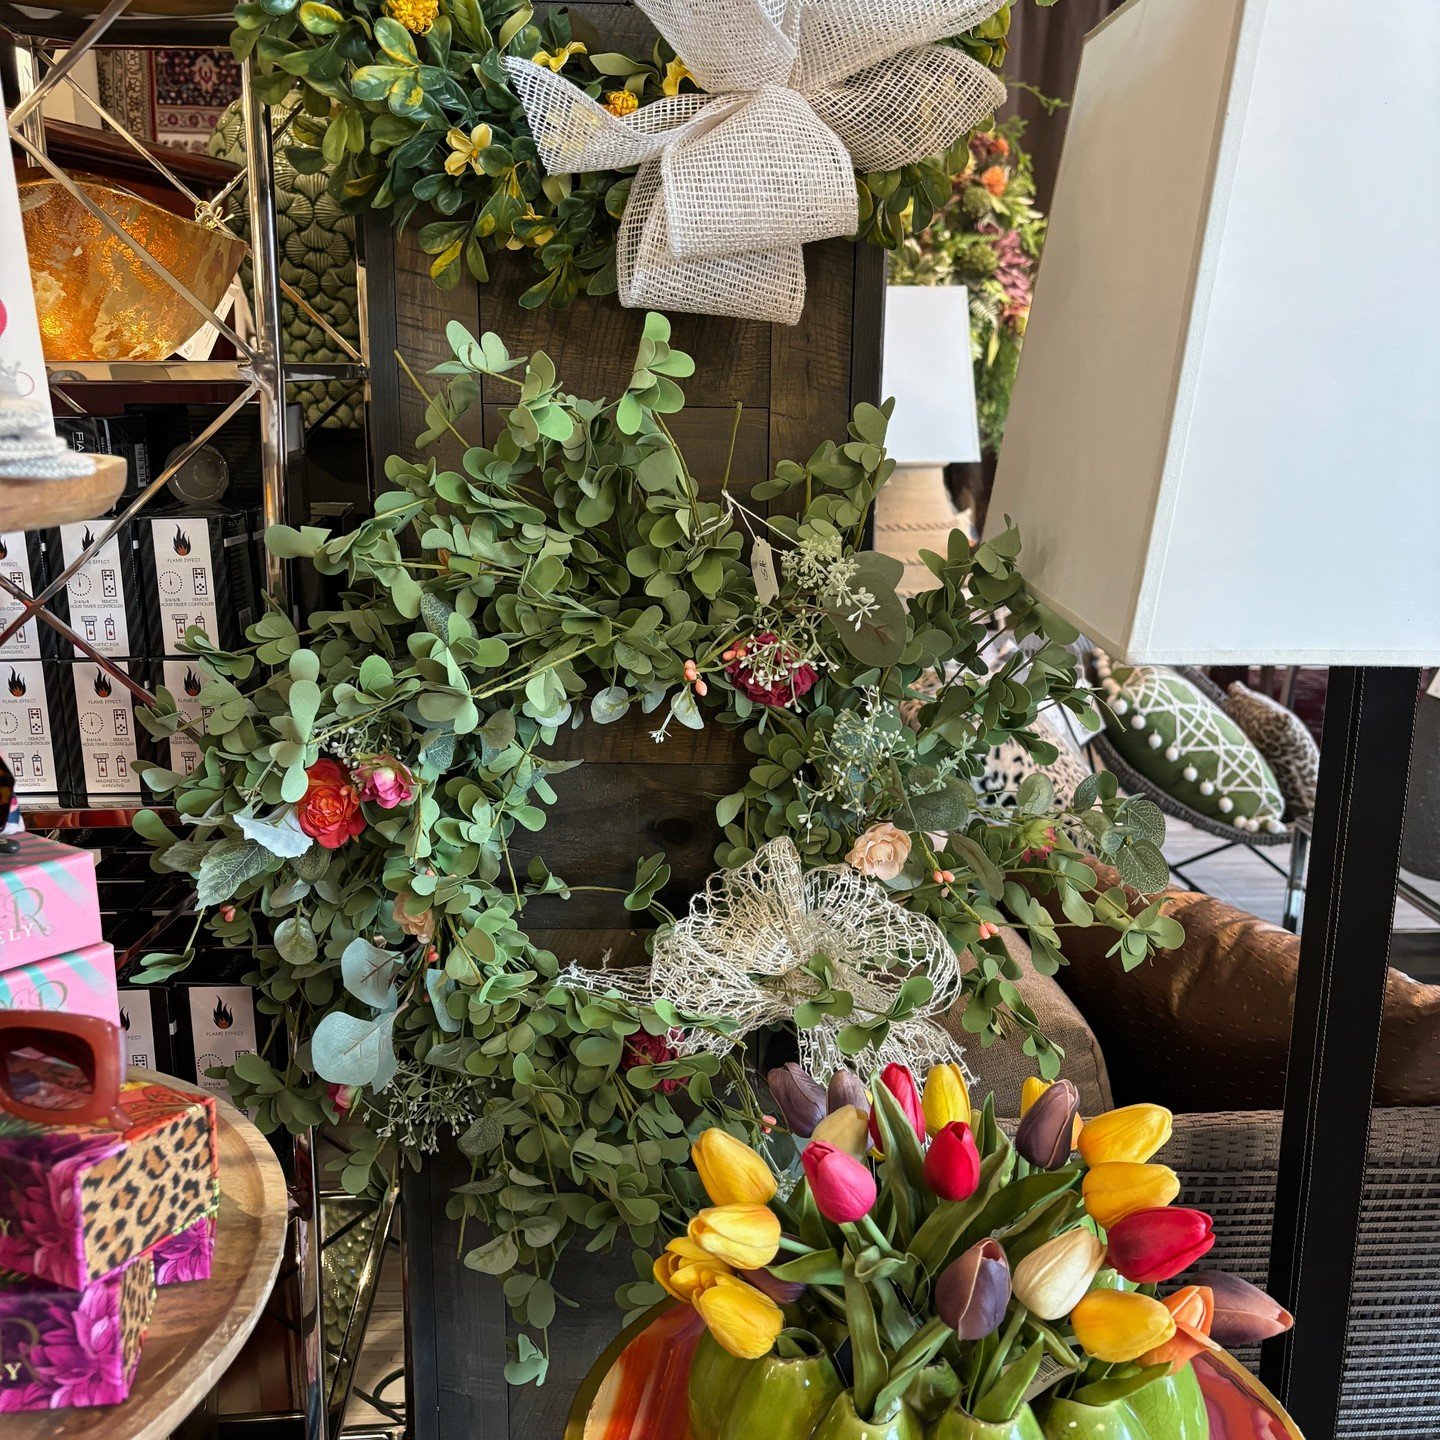 Spring wreaths are available at Studio Ferro. #studioferro #visitmorris #shopmorris #interiordesign #floraldesign